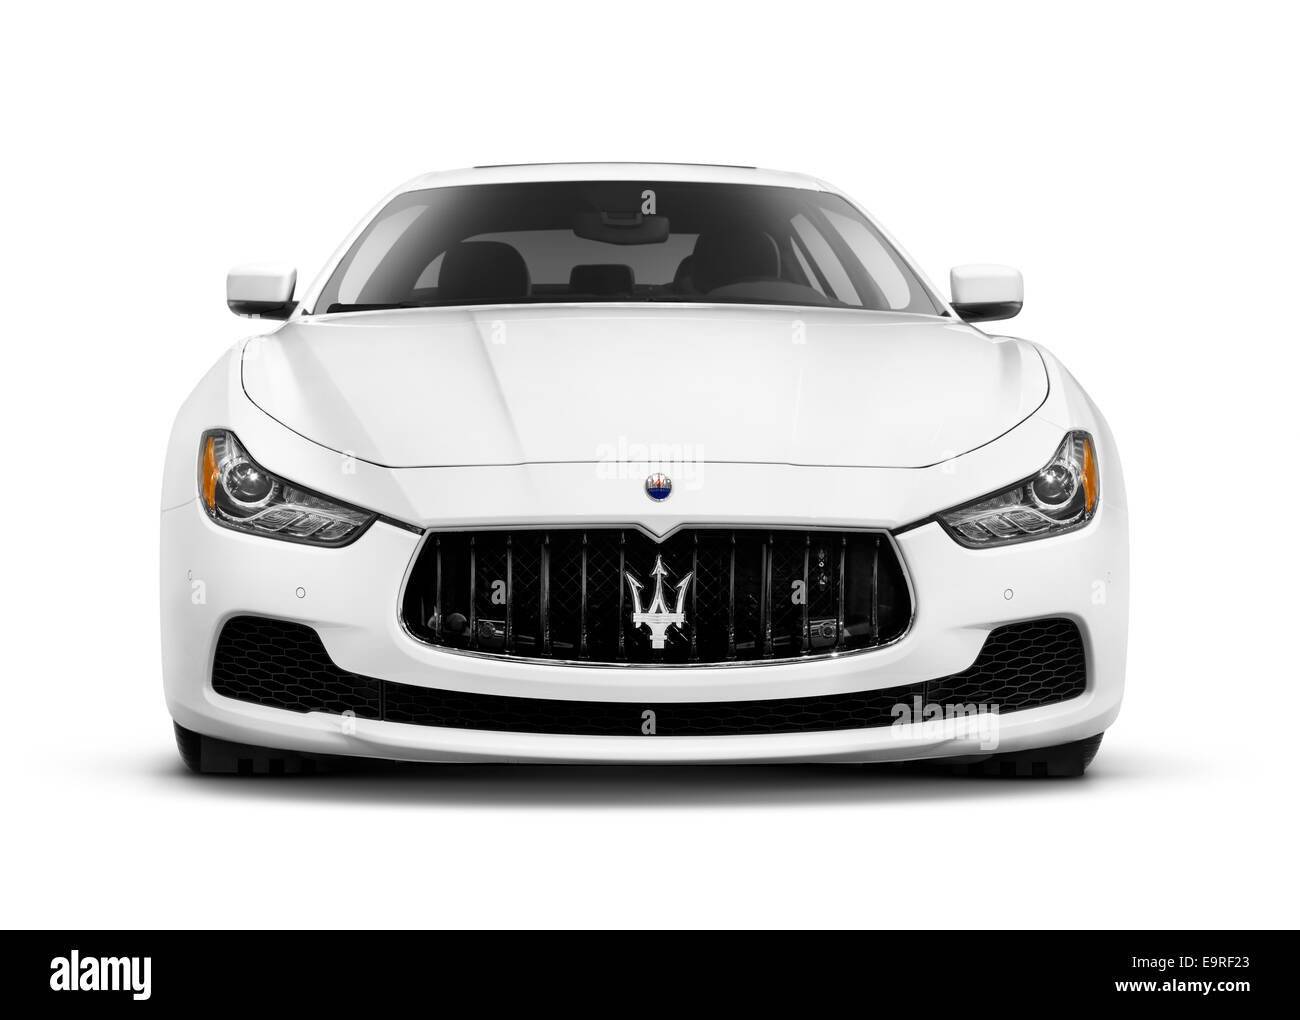 Führerschein und Drucke auf MaximImages.com – Weiß 2014 Maserati Ghibli S Q4 Luxusfahrzeug, Frontansicht isoliert auf weißem Hintergrund mit Clipping-Pfad Stockfoto